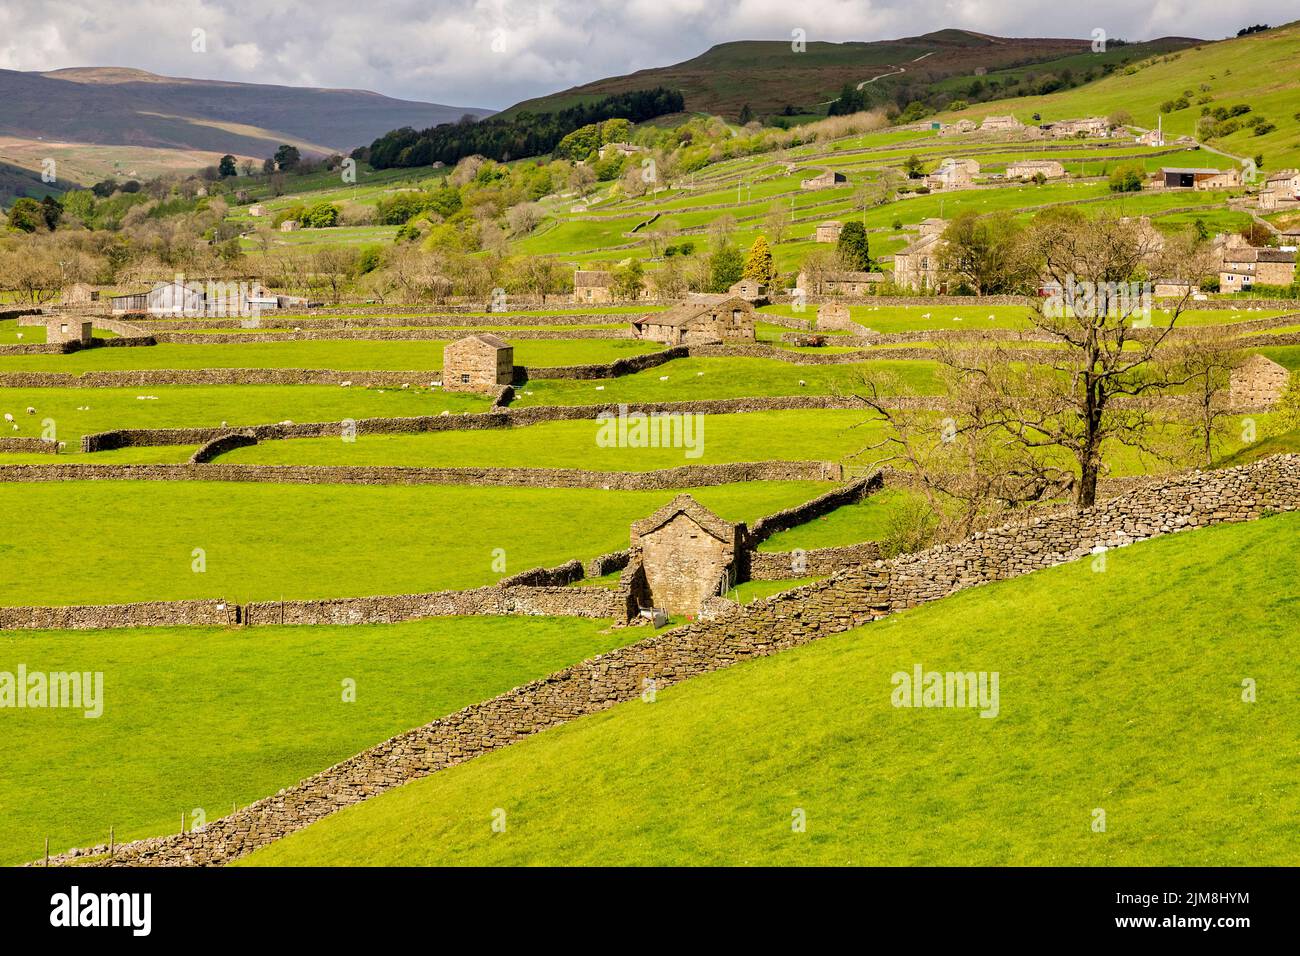 Paisaje típico de Yorkshire Dales en Swaledale, con graneros, ovejas y muros de piedra seca. Foto de stock